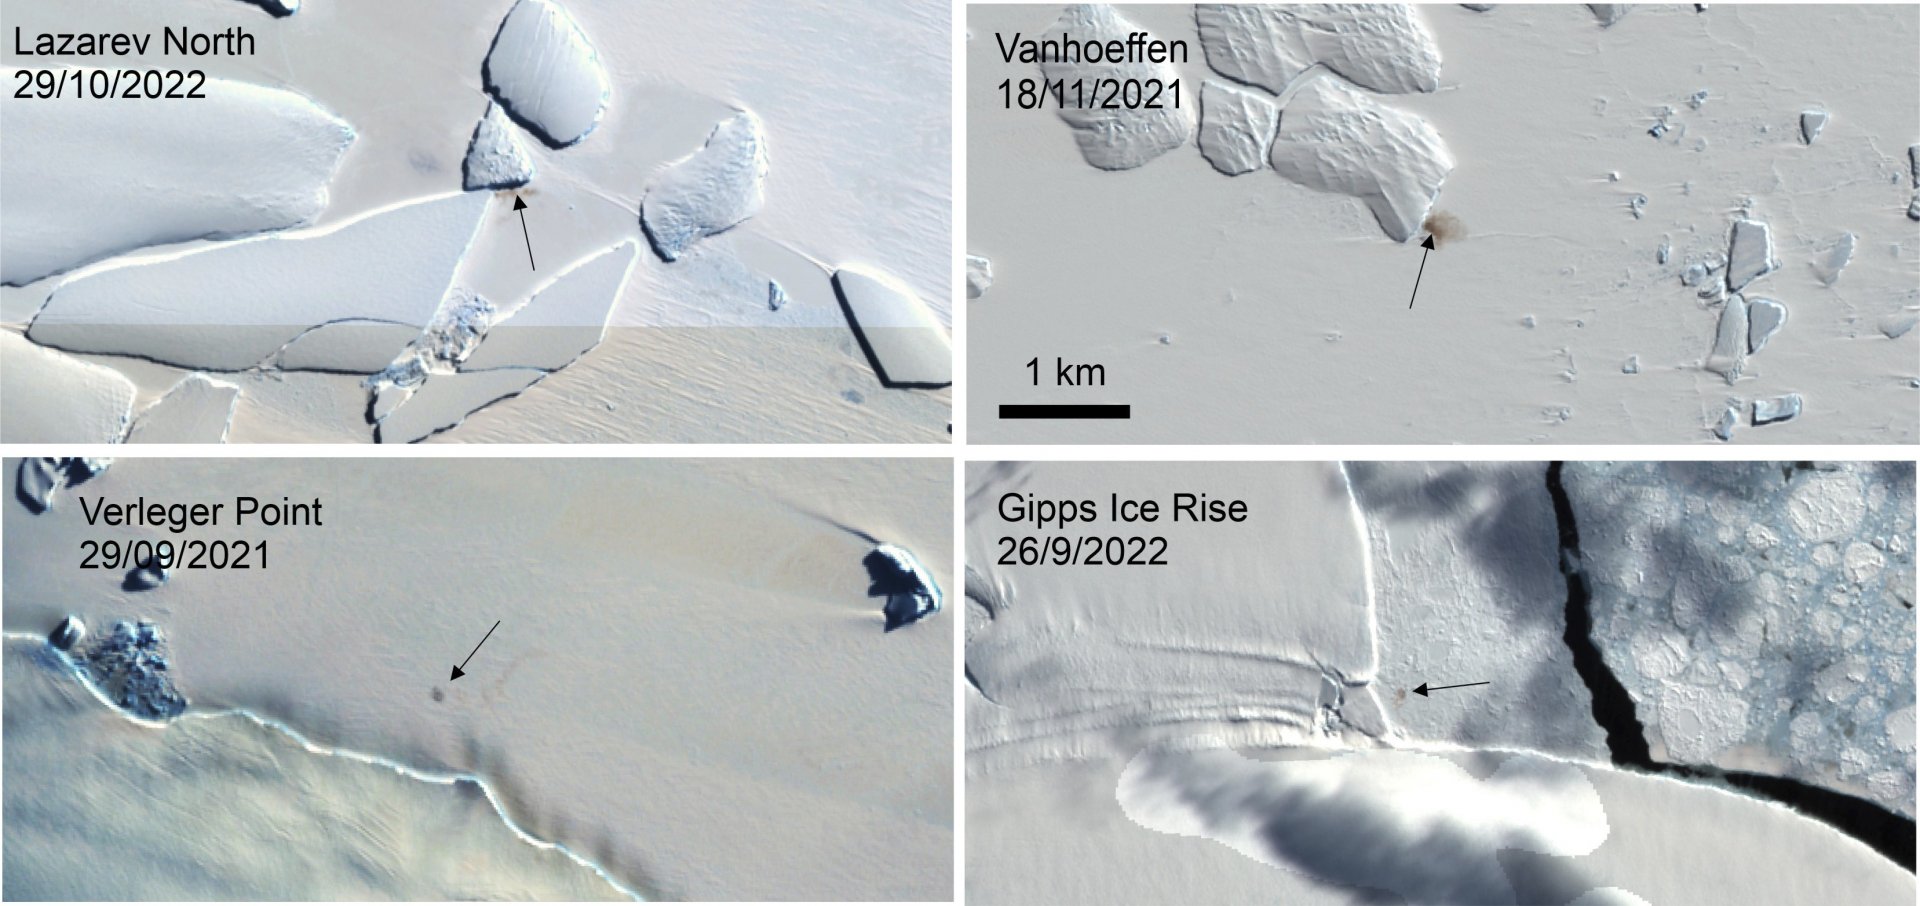 Сателитна снимка, предоставена от програмата "Коперник" на ЕС чрез Британската антарктическа служба през януари. Показва четири нови места за колонии на императорски пингвини в Антарктида.